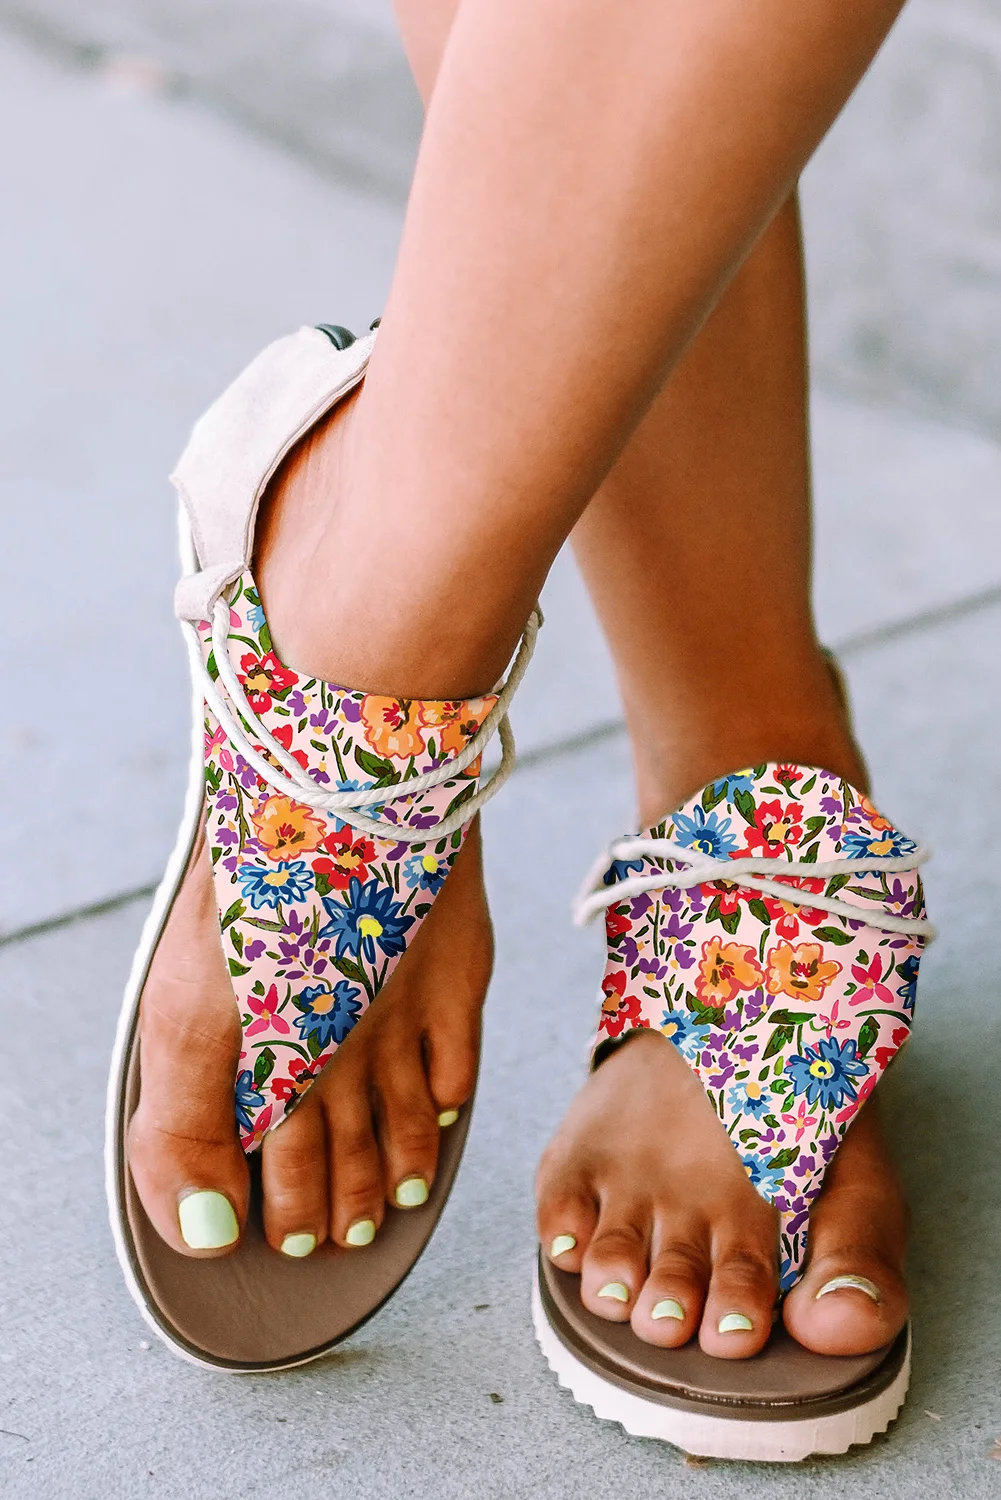 Dear-Lover Designer Women Sandals 2023 Ladies Shoes Floral Print Zipped Flip Flop Femme Sandals for Women Ladies